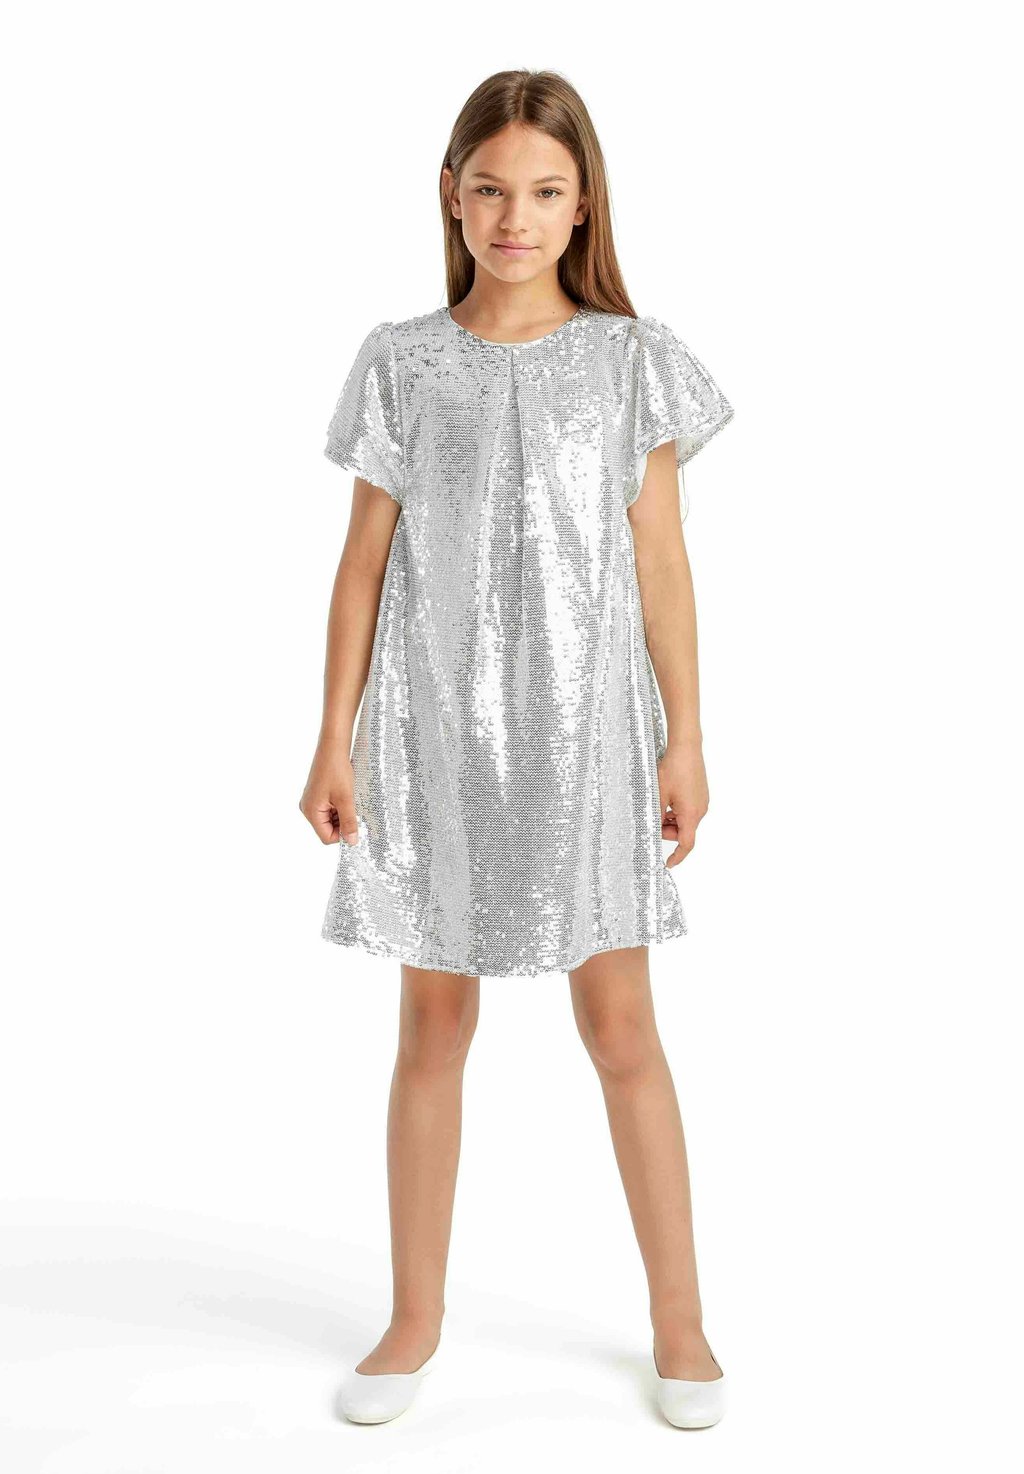 Элегантное платье Standard MINOTI, цвет silvercoloured элегантное платье party standard minoti красный